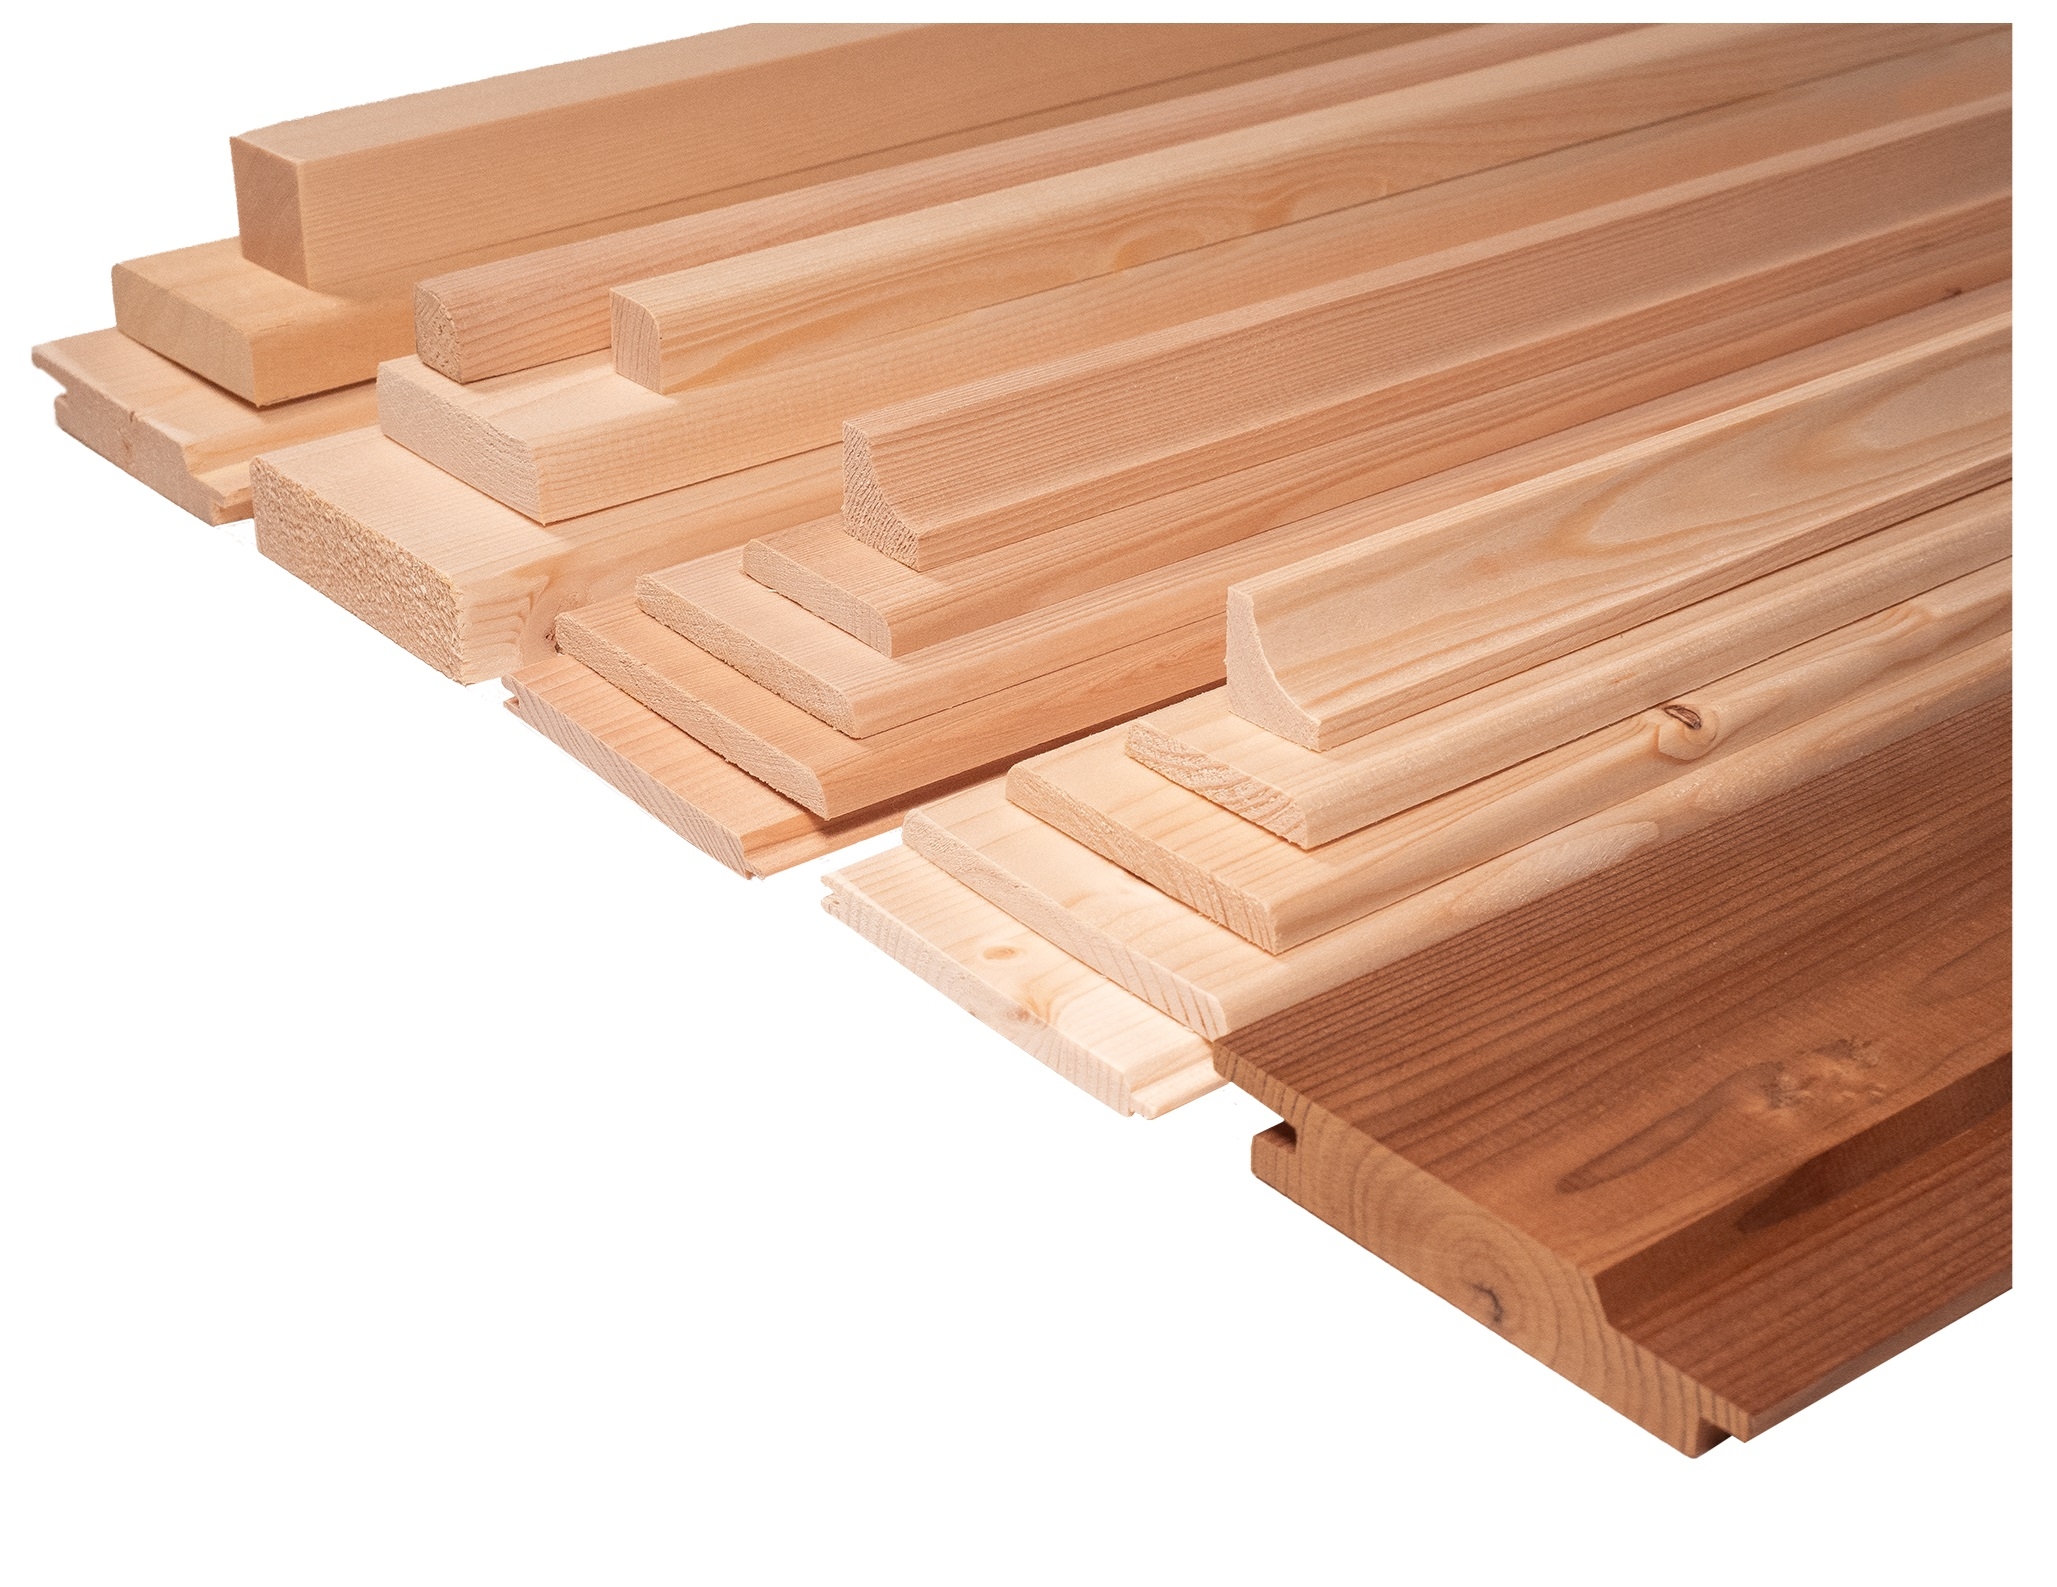 Timber kits and parts